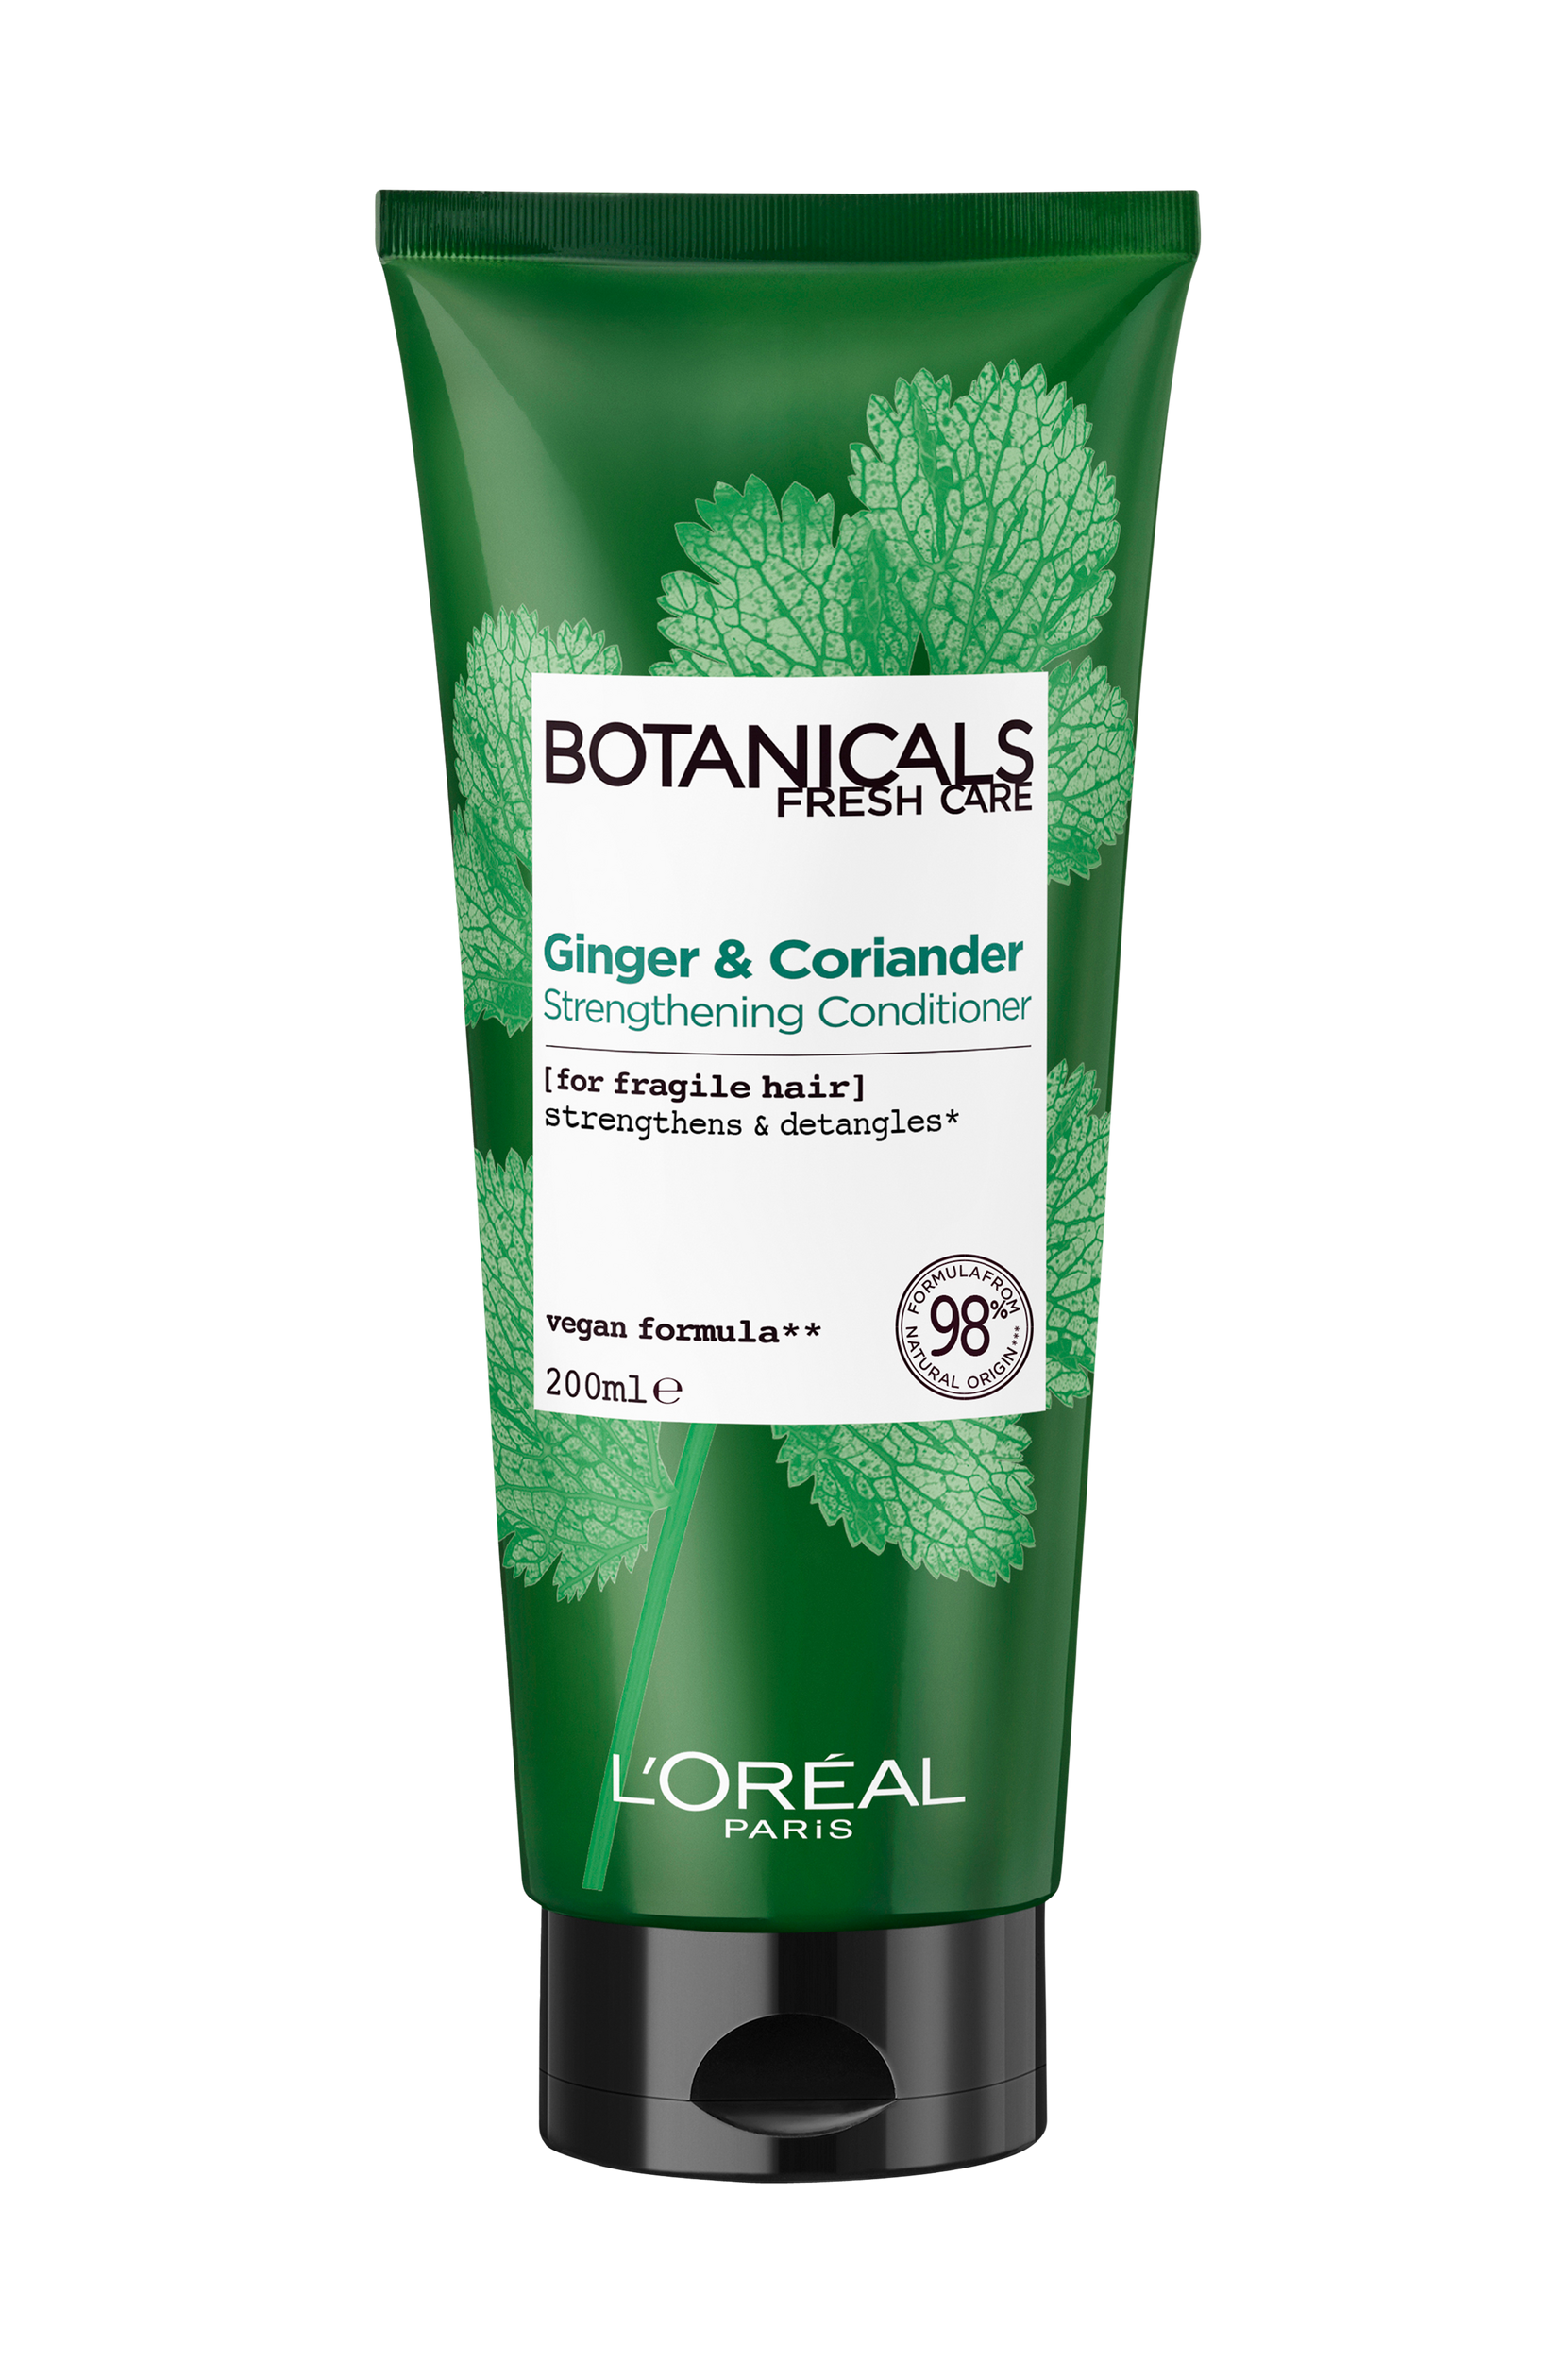 Botanicals Strength Cure Conditioning Balm, 200 ml, L'Oréal Paris